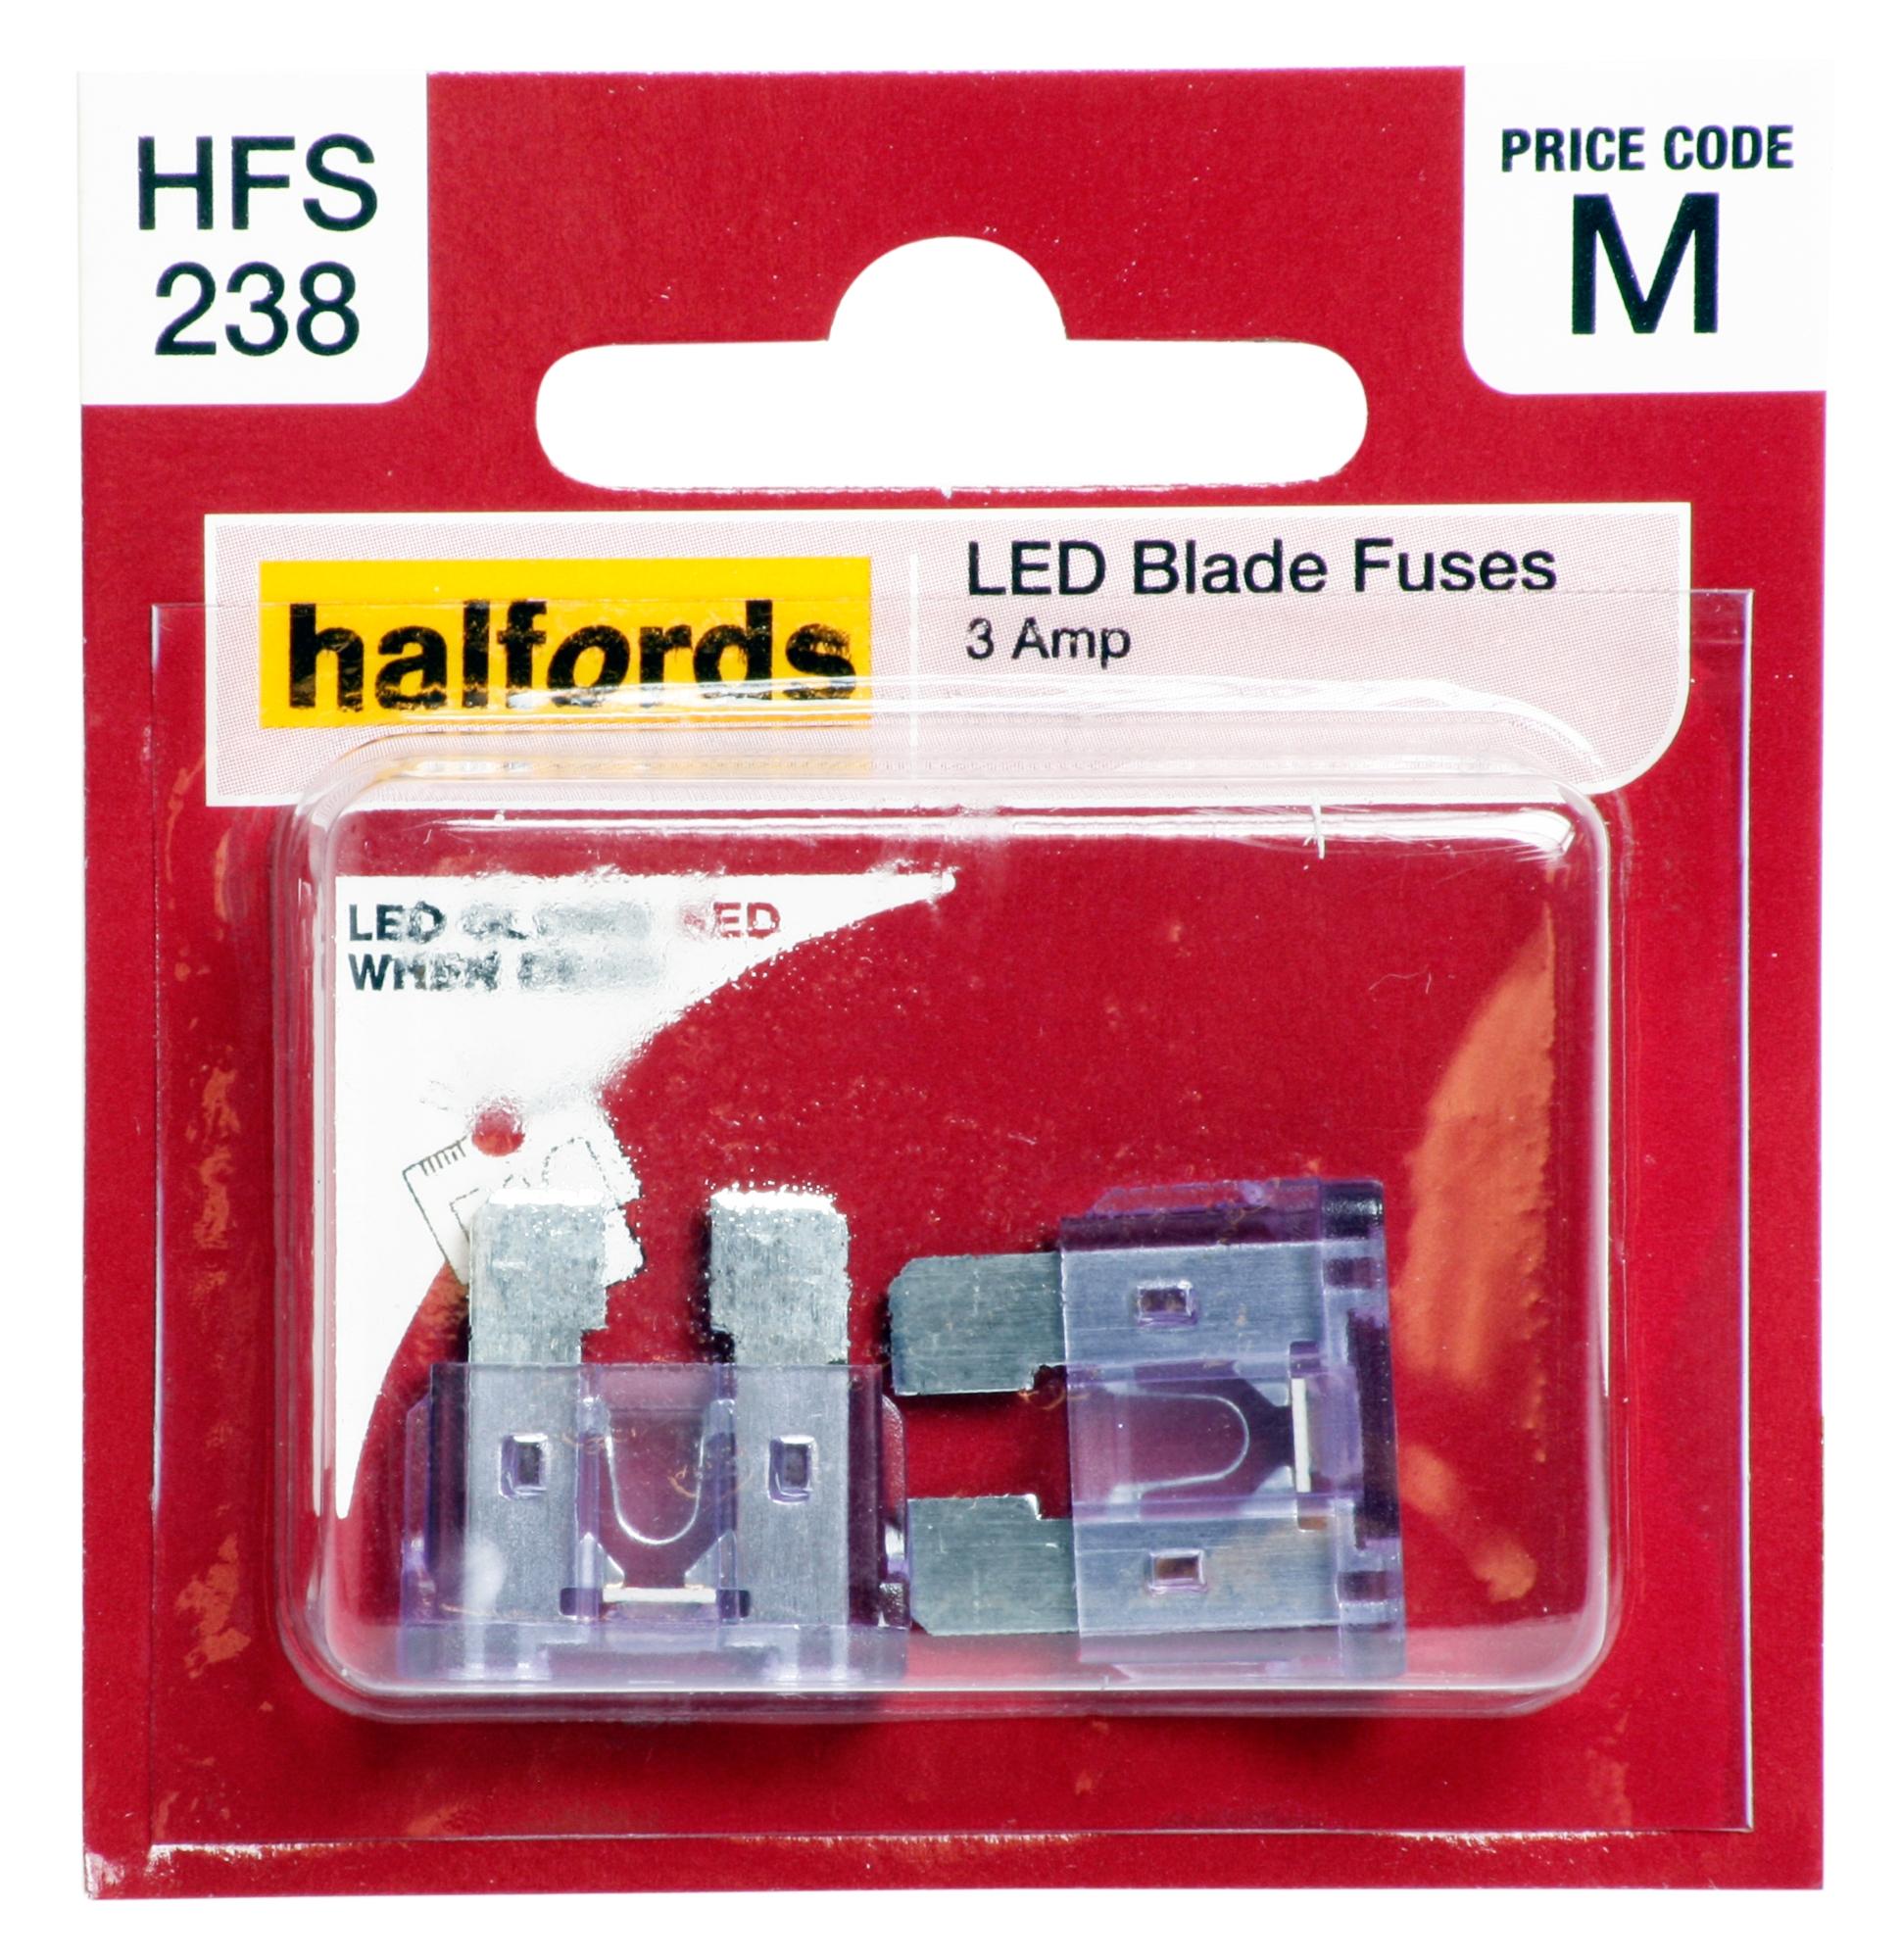 Halfords Led Blade Fuses 3 Amp (Hfs238)